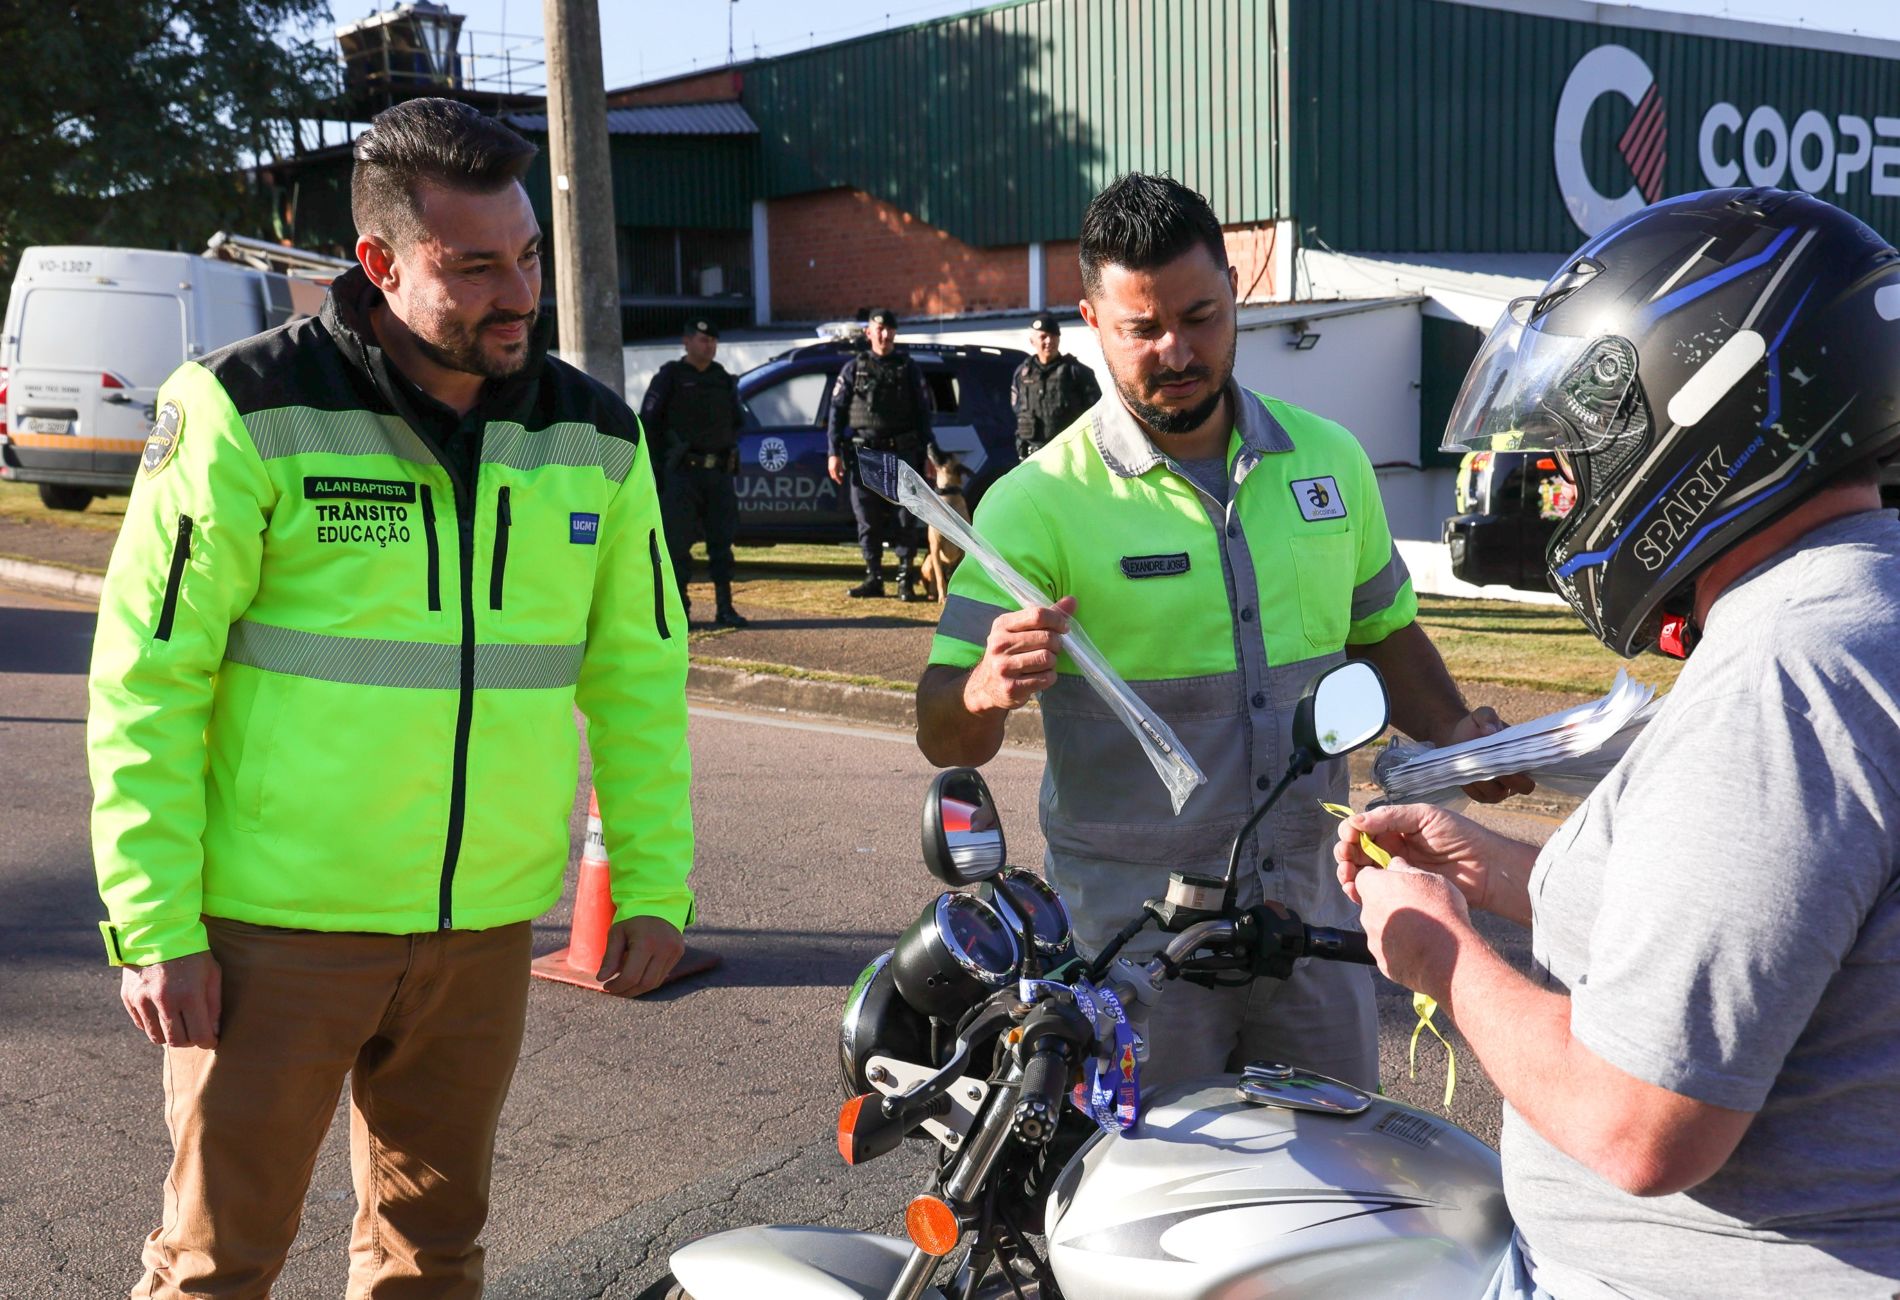 Na imagem, o operador de máquinas Wesley, está sobre a moto, e recebe um kit com antena corta-pipa, adesivo e fita do Maio Amarelo, durante uma ação educativa para promover a segurança no trânsito.